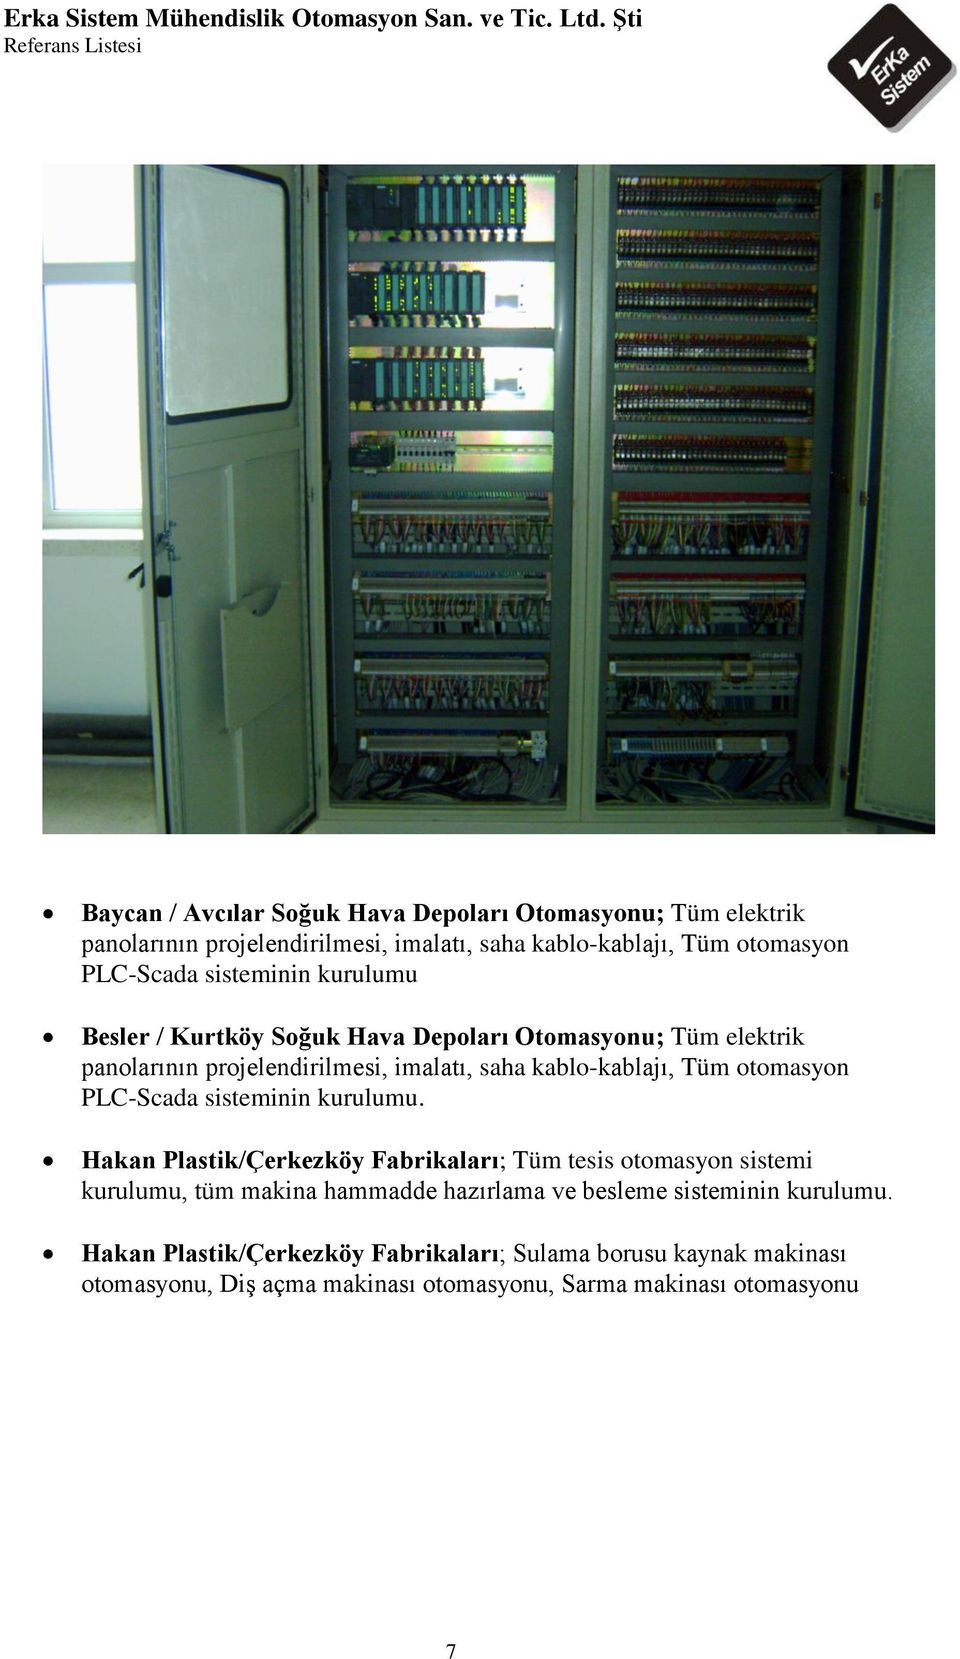 kablo-kablajı, Tüm otomasyon PLC-Scada Hakan Plastik/Çerkezköy Fabrikaları; Tüm tesis otomasyon sistemi kurulumu, tüm makina hammadde